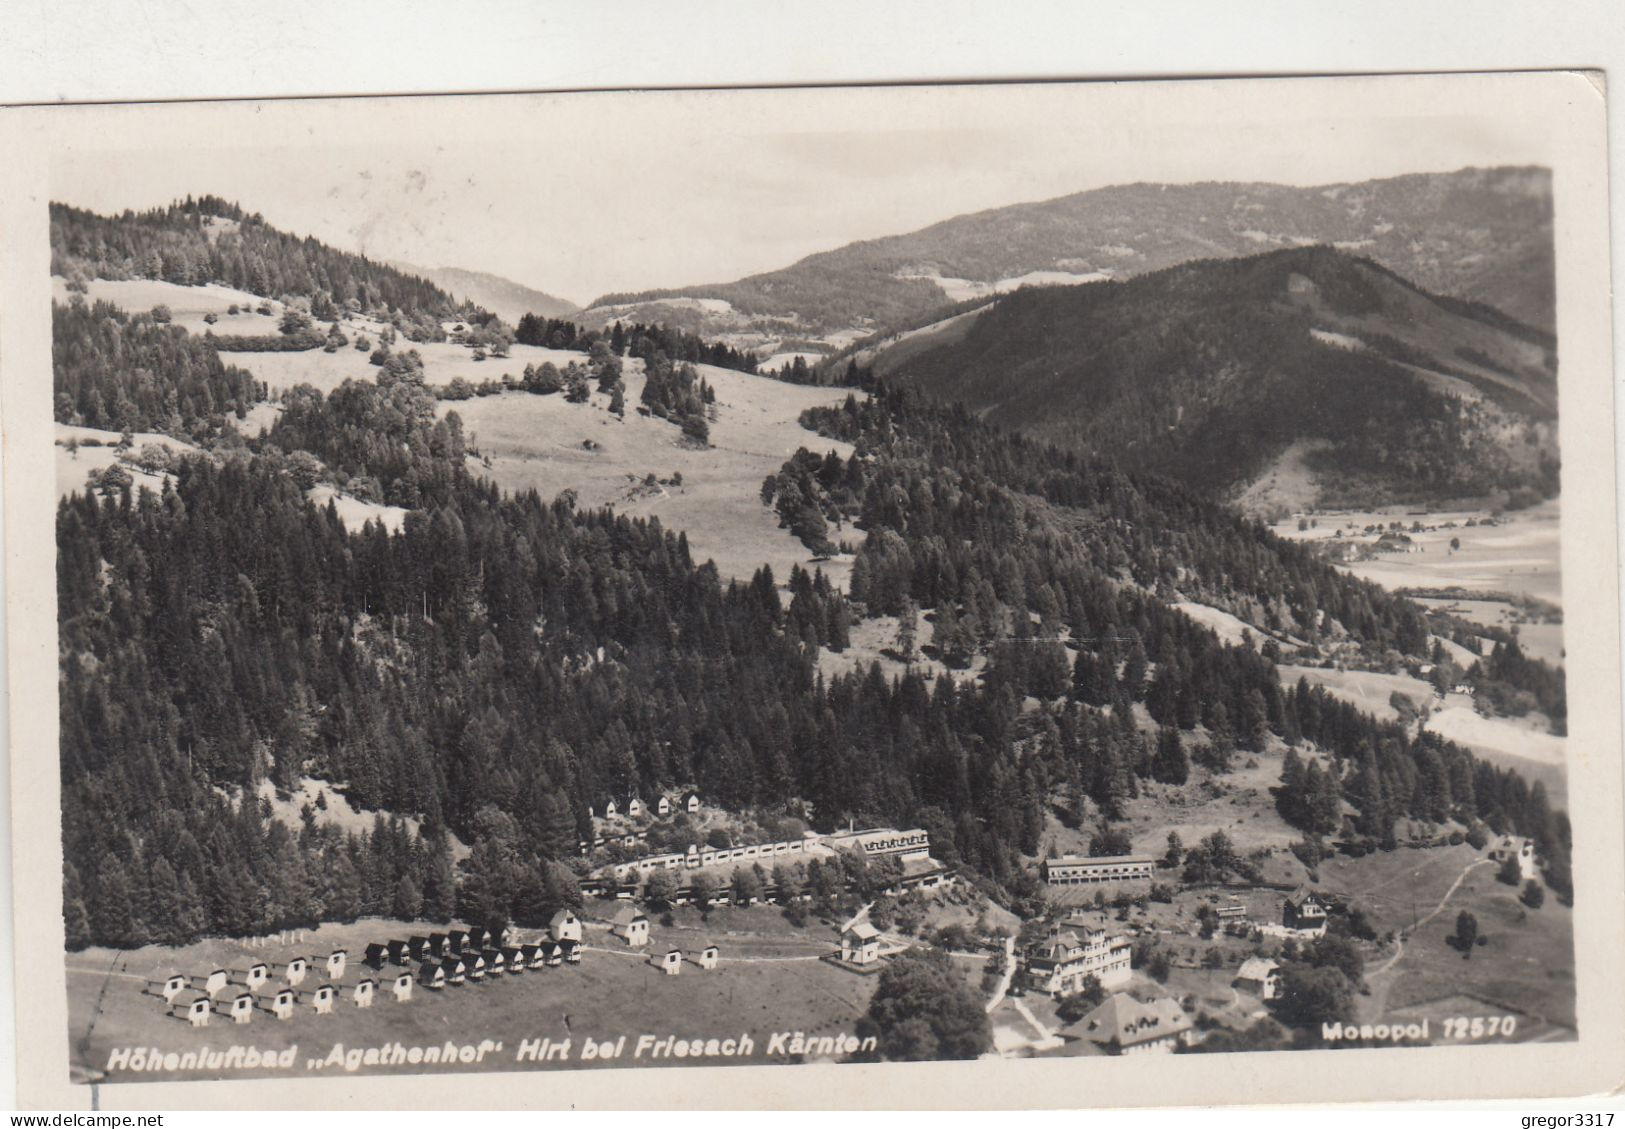 D4231) Höhenluftbad AGATHENHOF HIRT Bei FRIESACH - Kärnten - ALT ! 1933 - Friesach